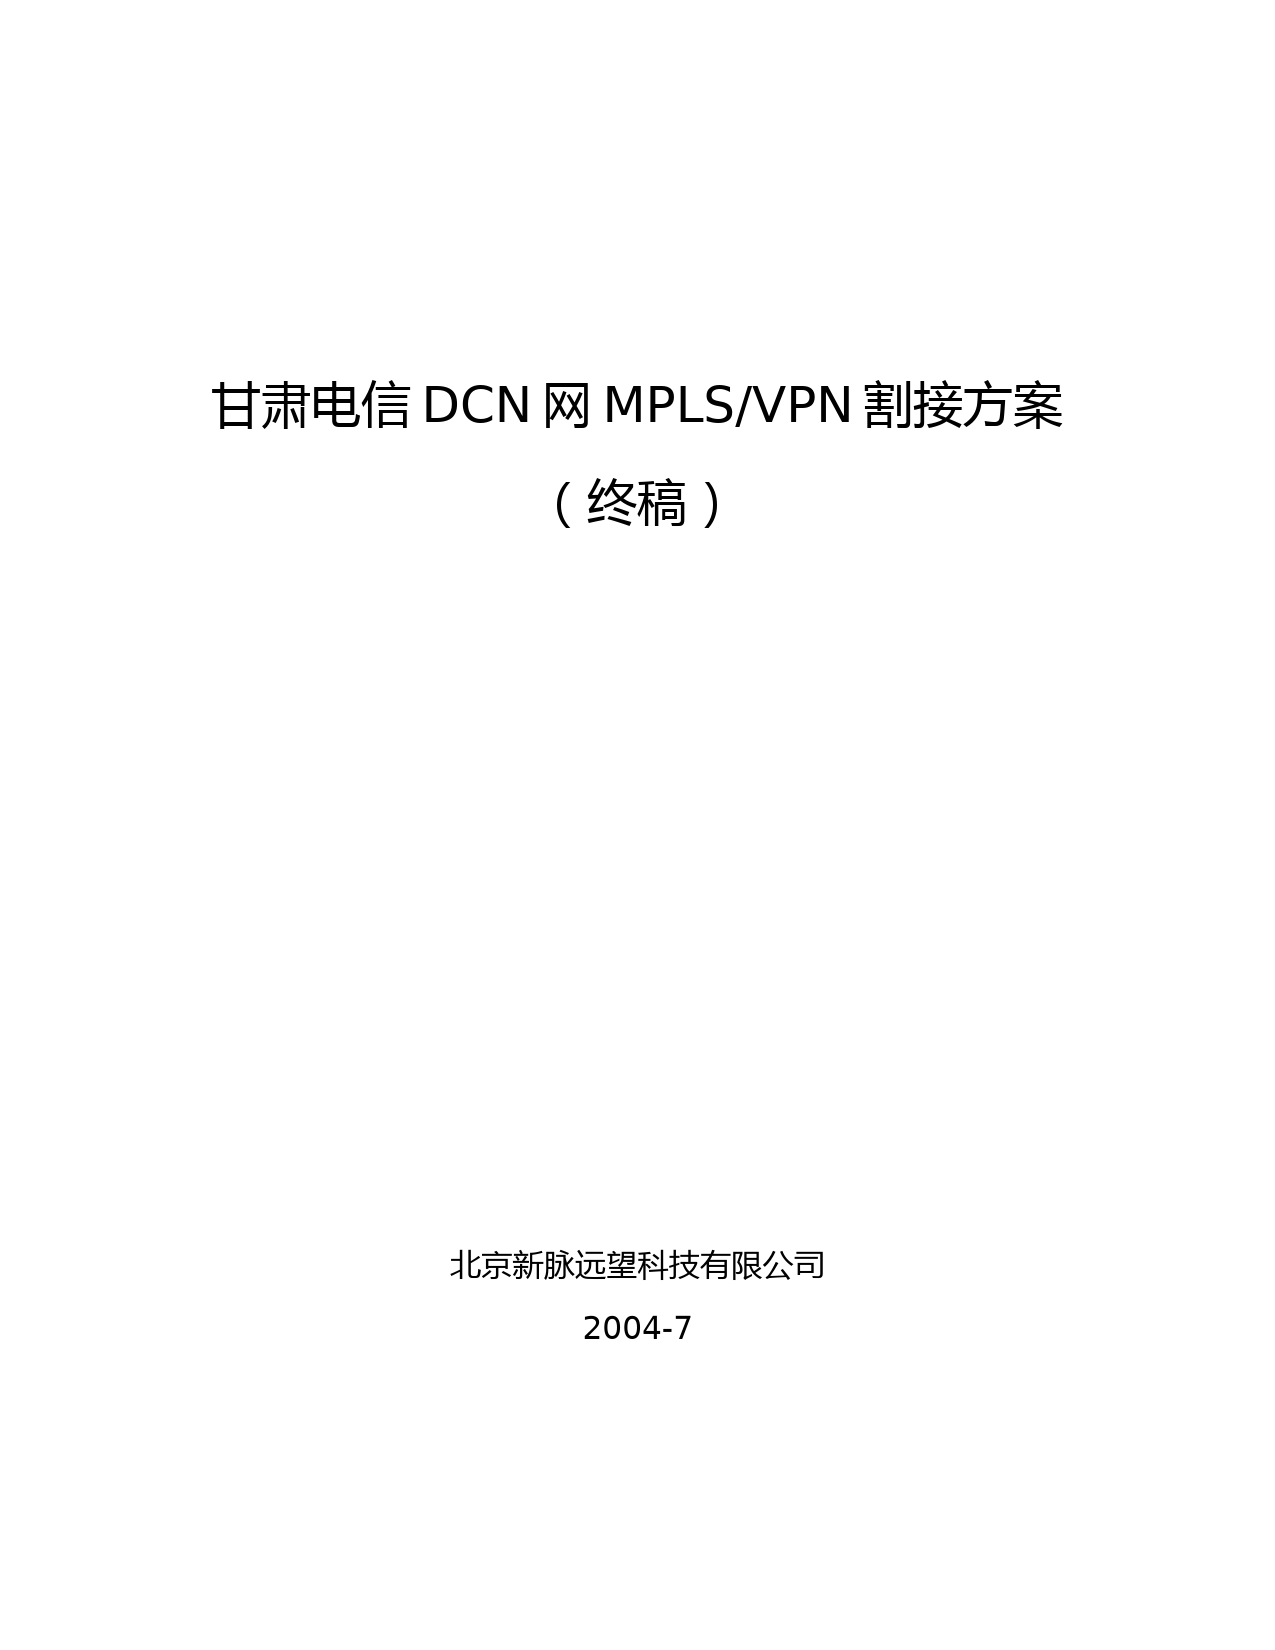 甘肃电信DCN网MPLS-VPN方案